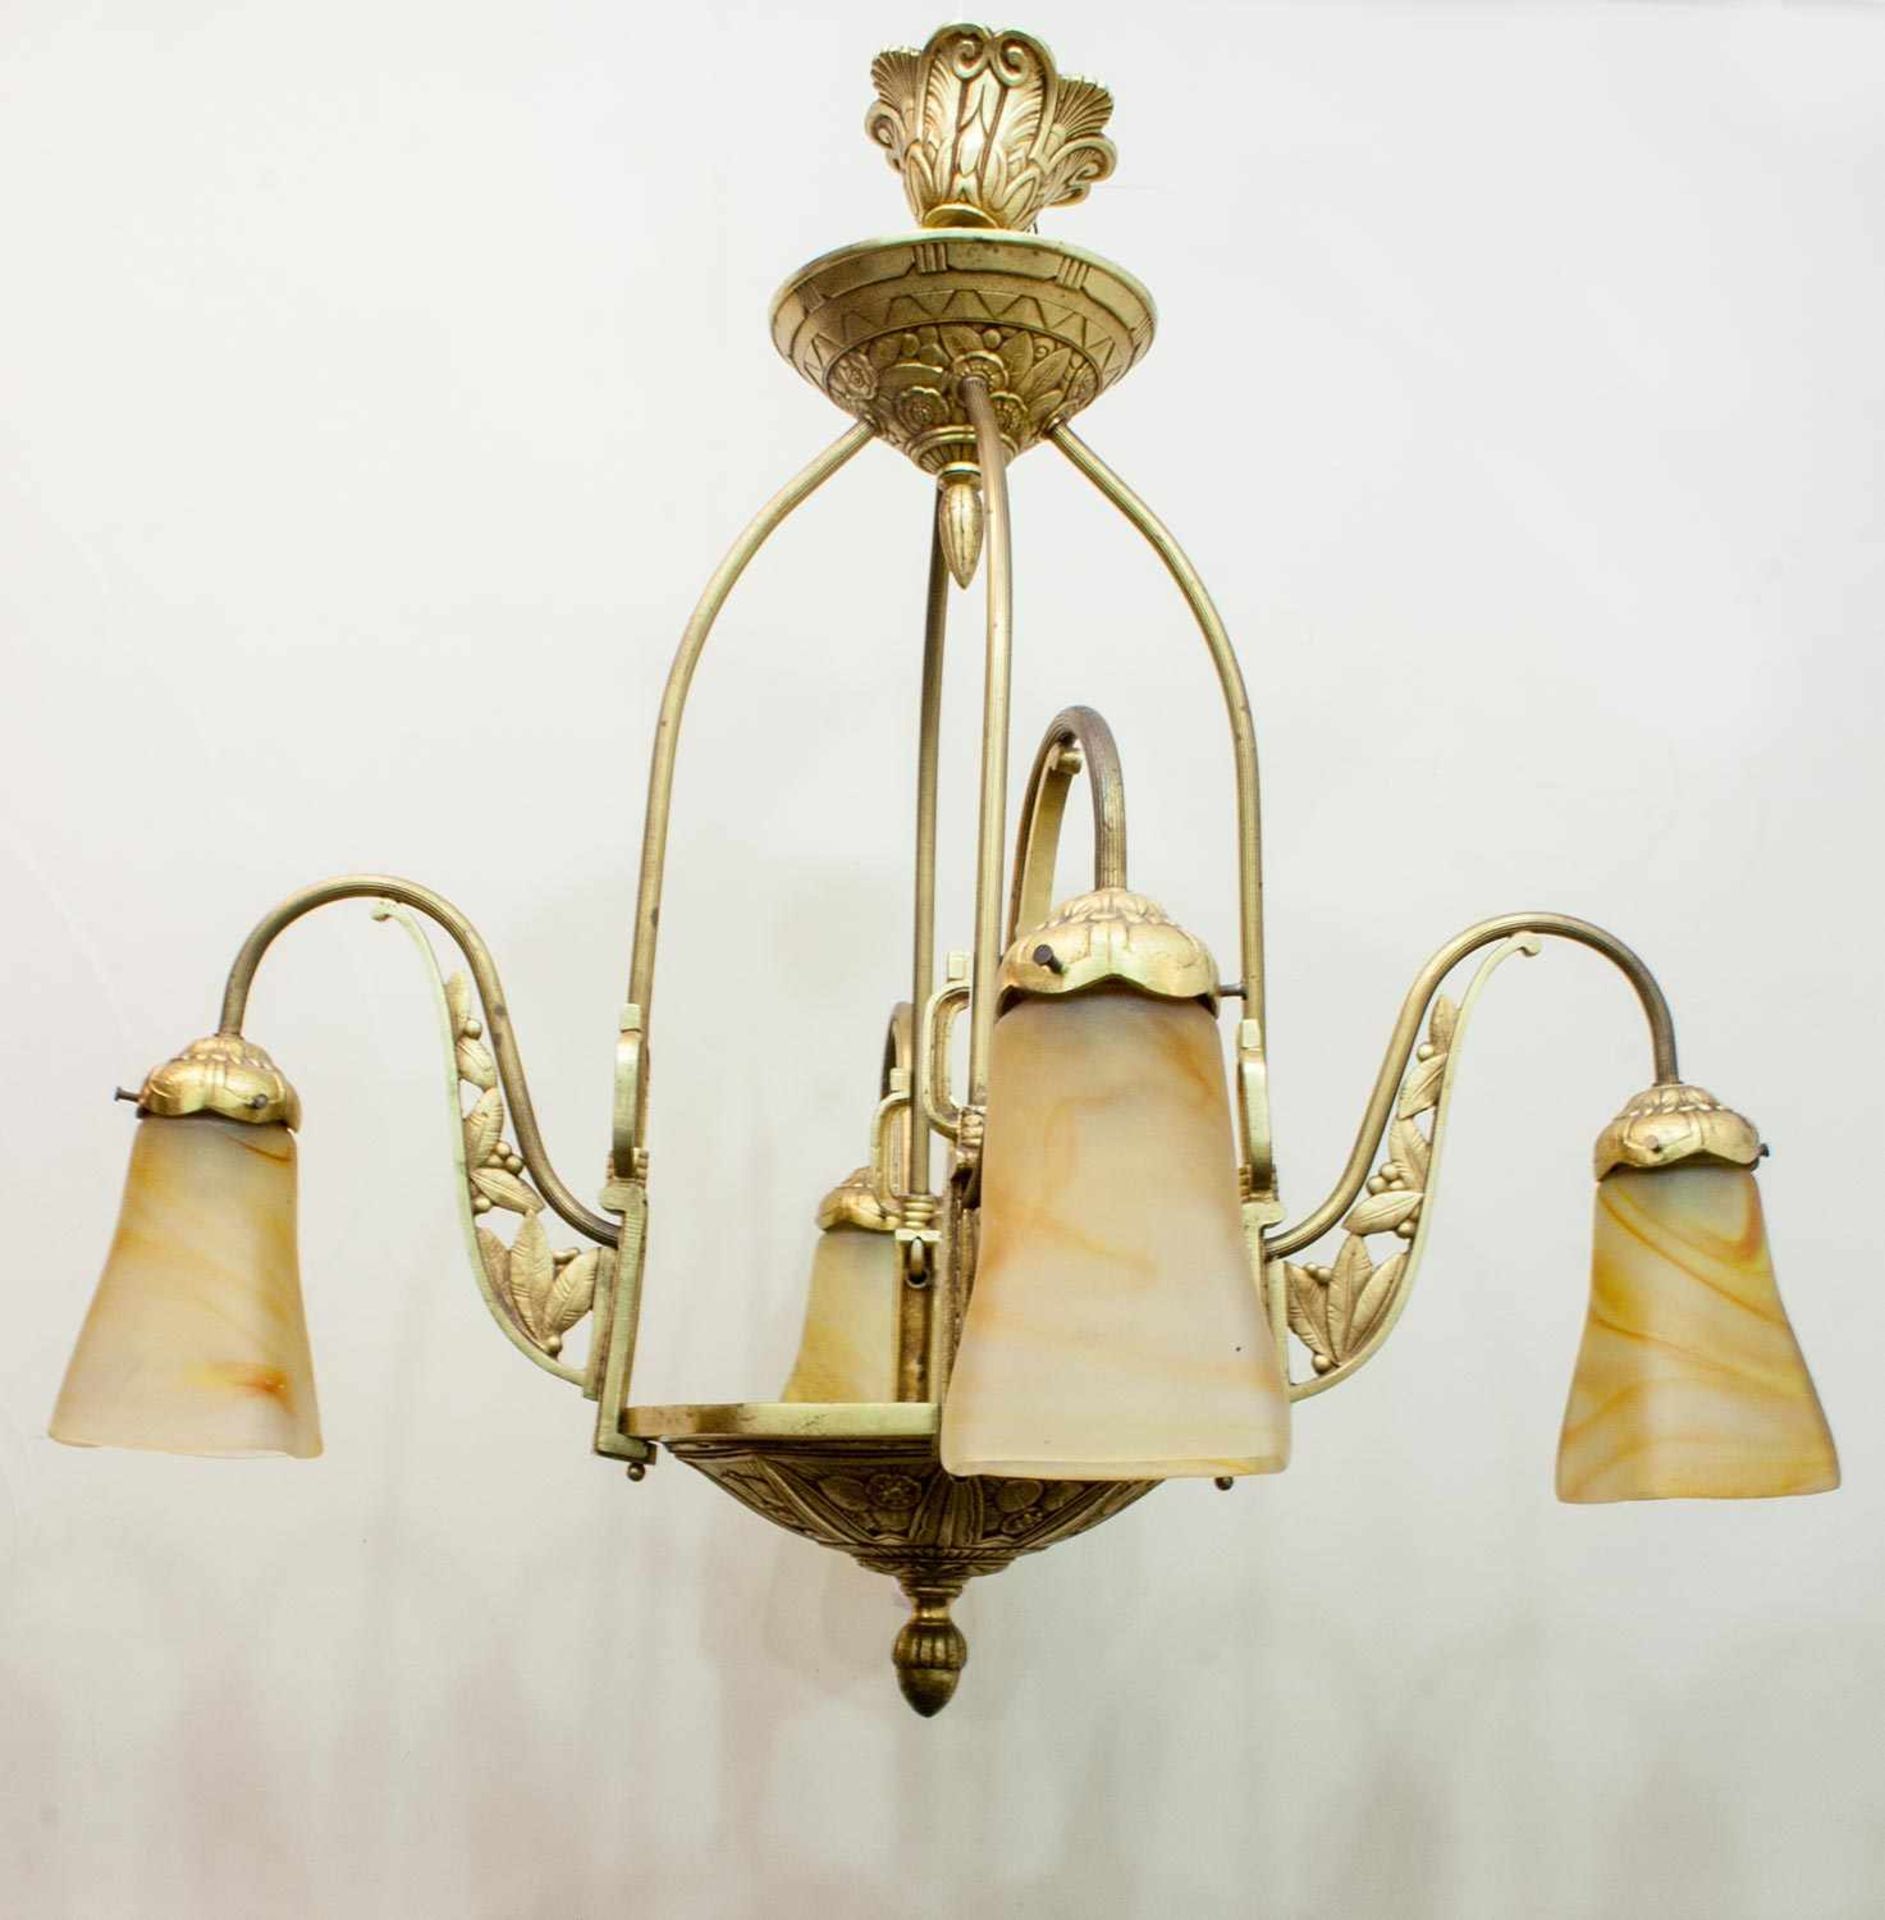 Jugendstil - Deckenlampe Frankreich um 1910, Messing, feuervergoldet, pàtes-de-verre Gläser,